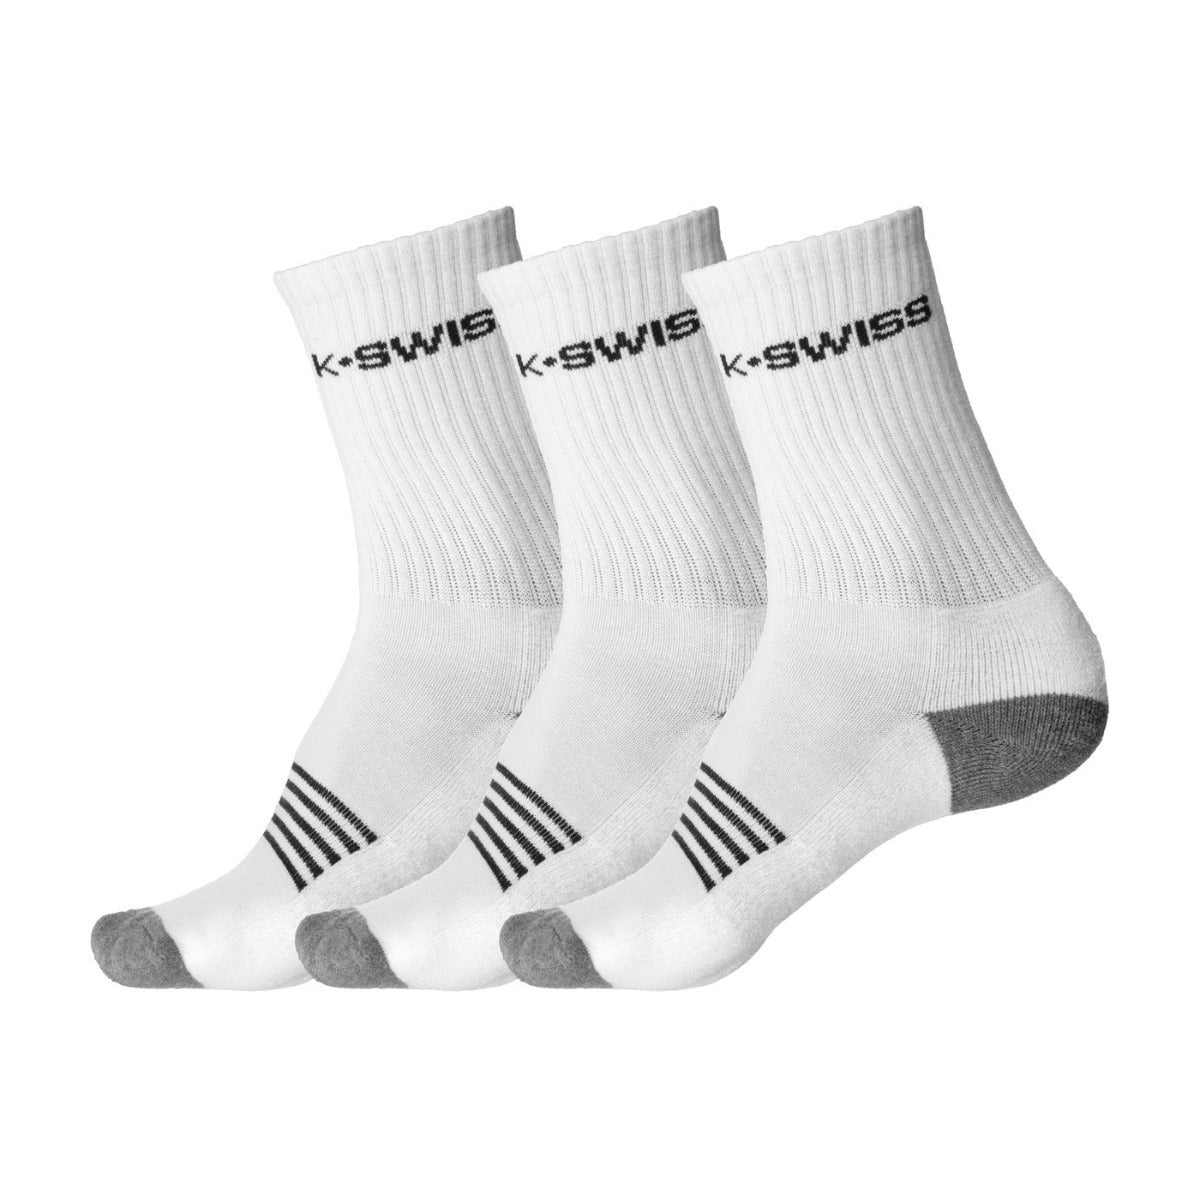 K Swiss Mens Crew Socks 3 Pack (White)